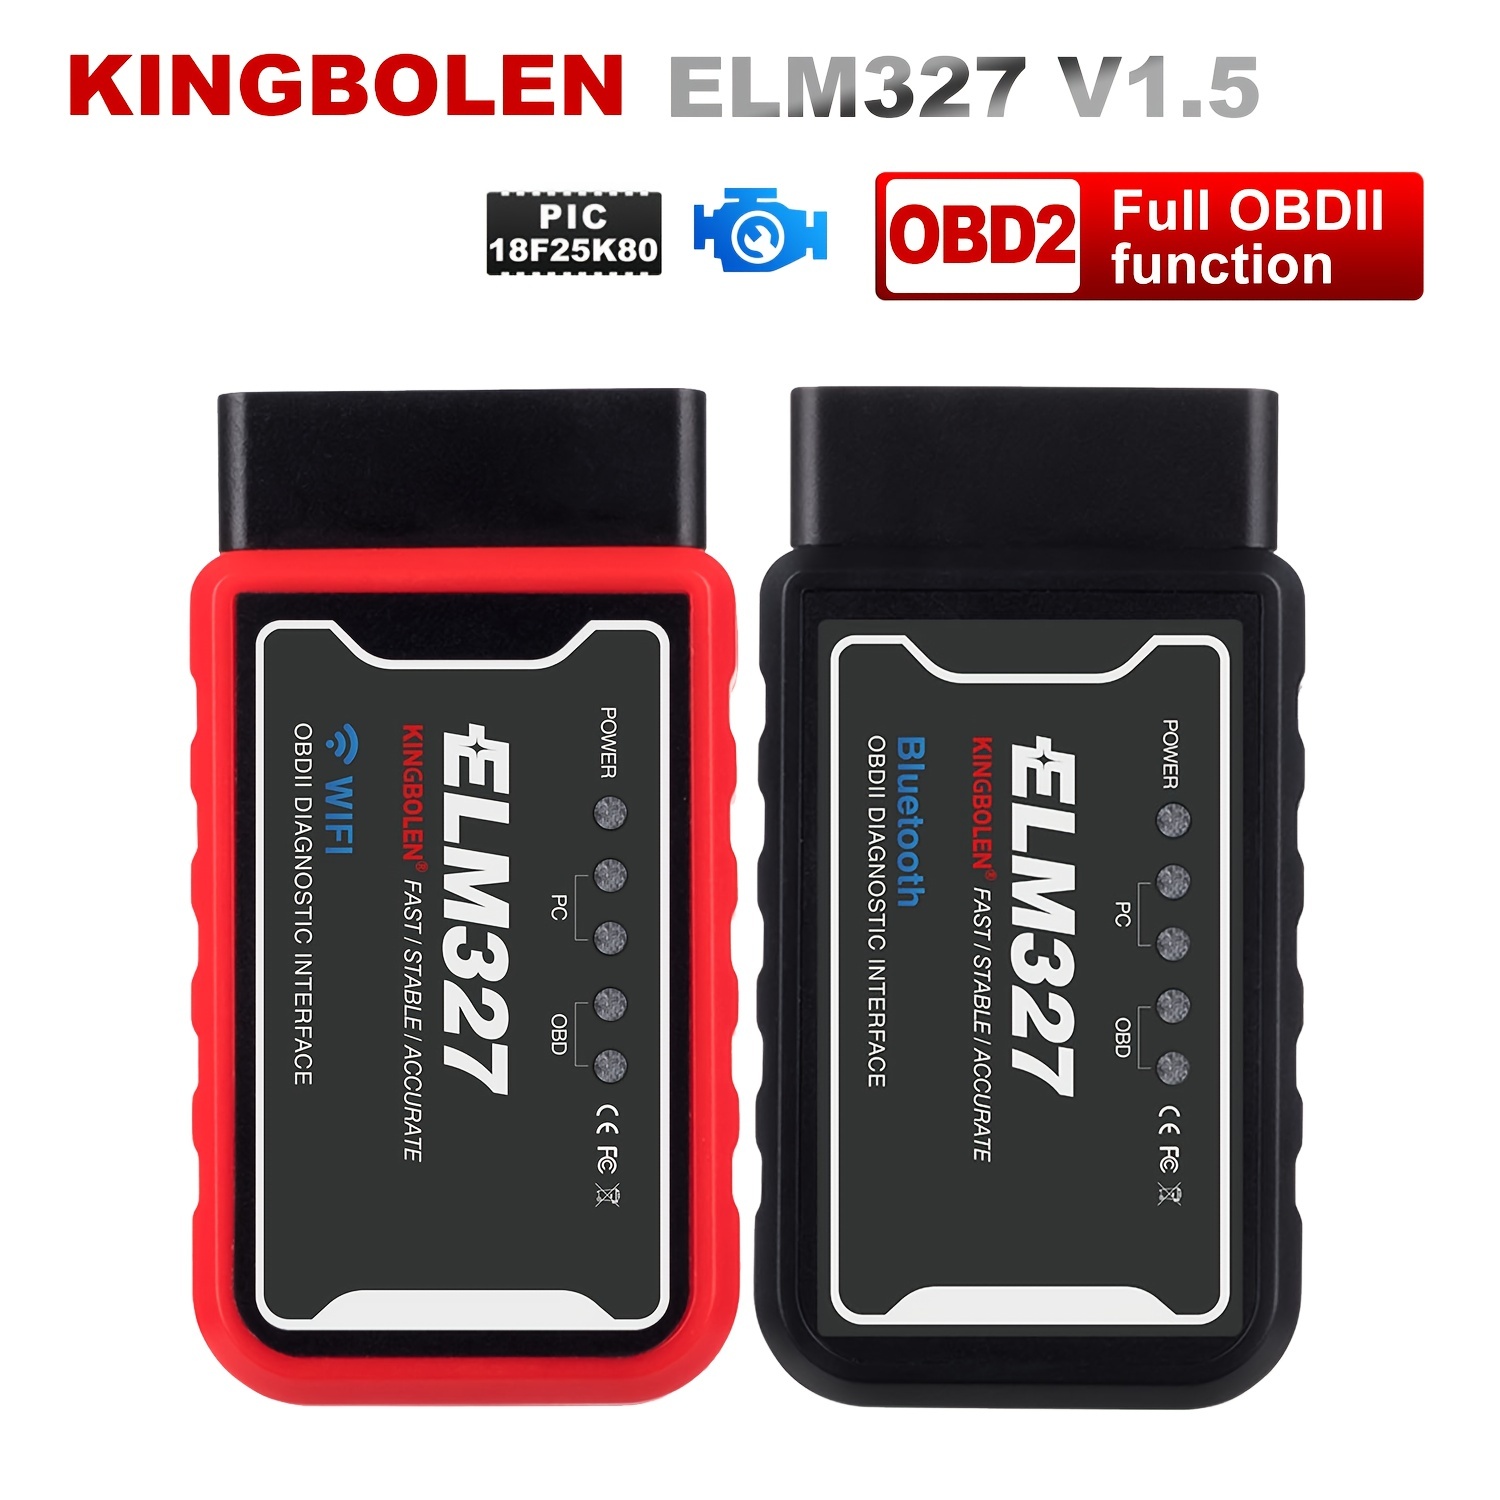 Elm 327 - Lecteur OBD2 - Android 1.5 - Bluetooth 1.5 - Noir - Prix